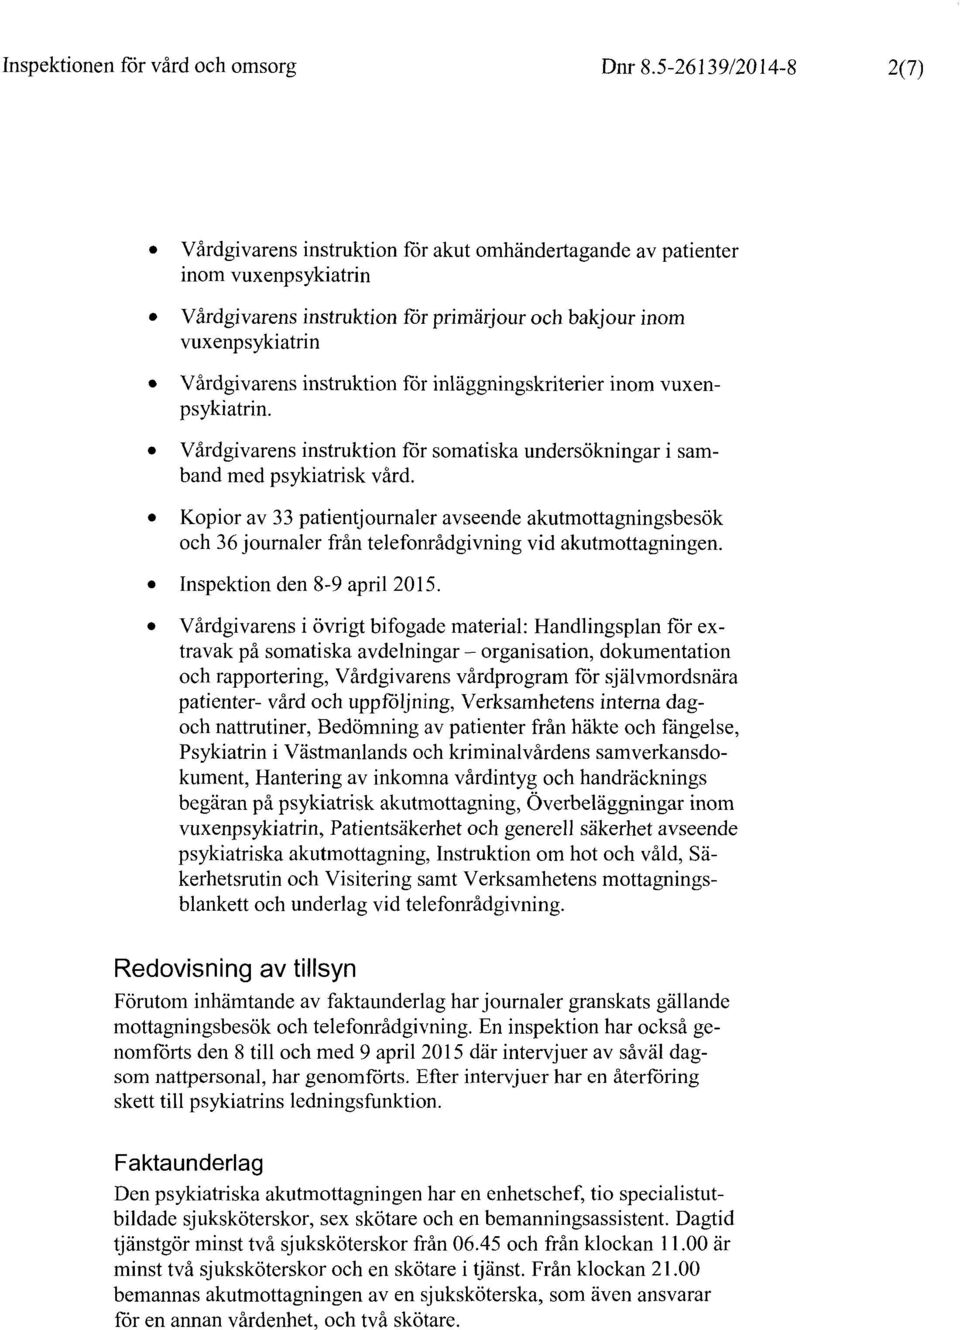 Vårdgivarens instruktion för inläggningskriterier psykiatrin. i sam- Vårdgivarens instruktion för somatiska undersökningar band med psykiatrisk vård.